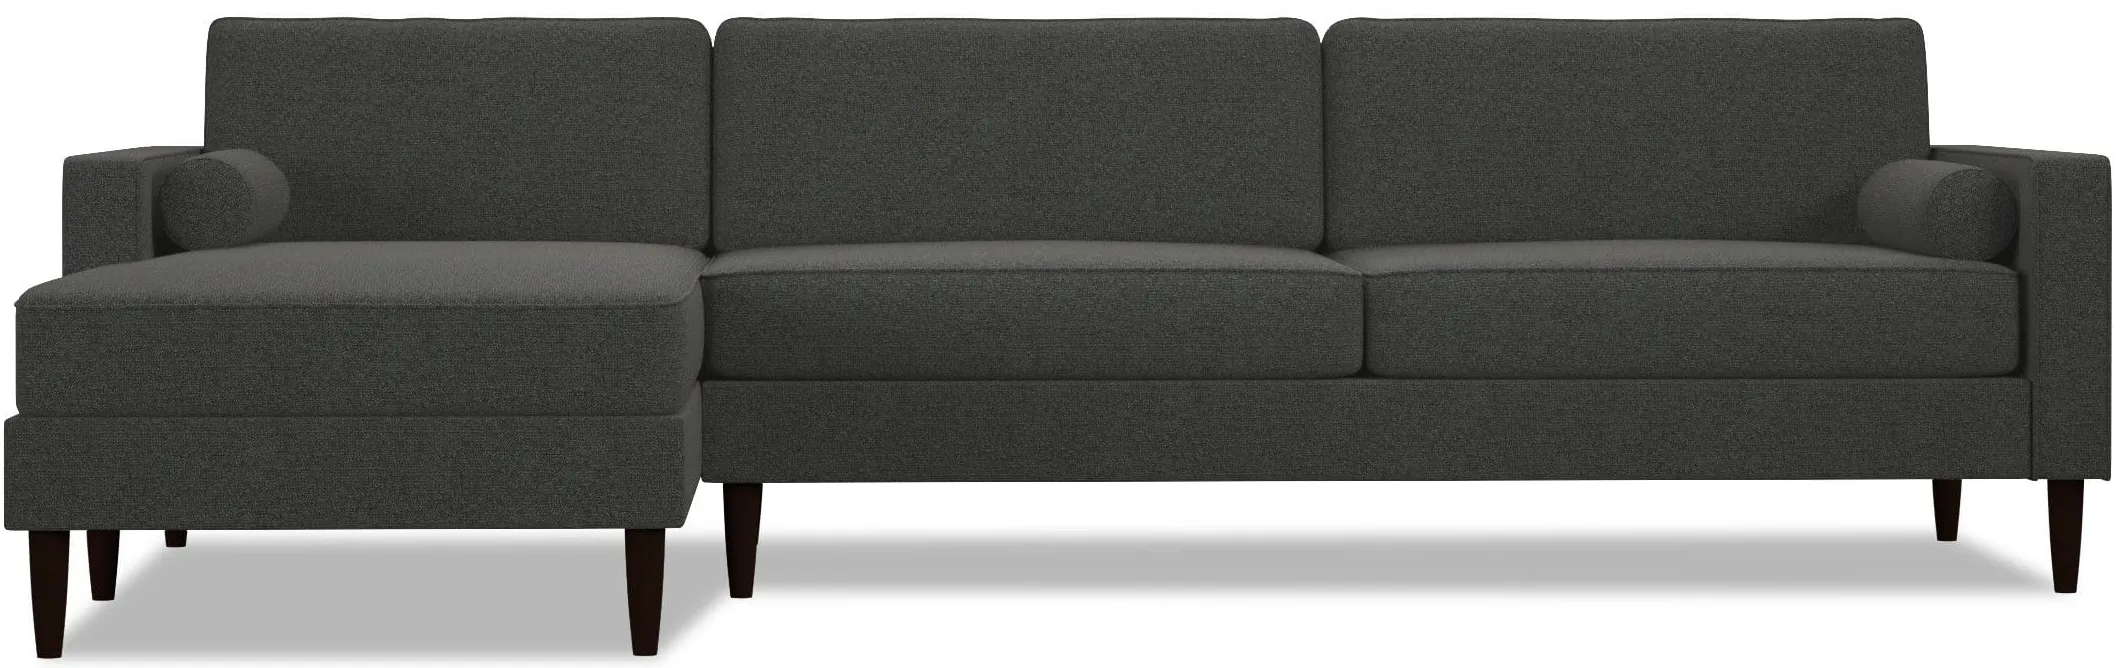 Samson 2pc Sectional Sofa